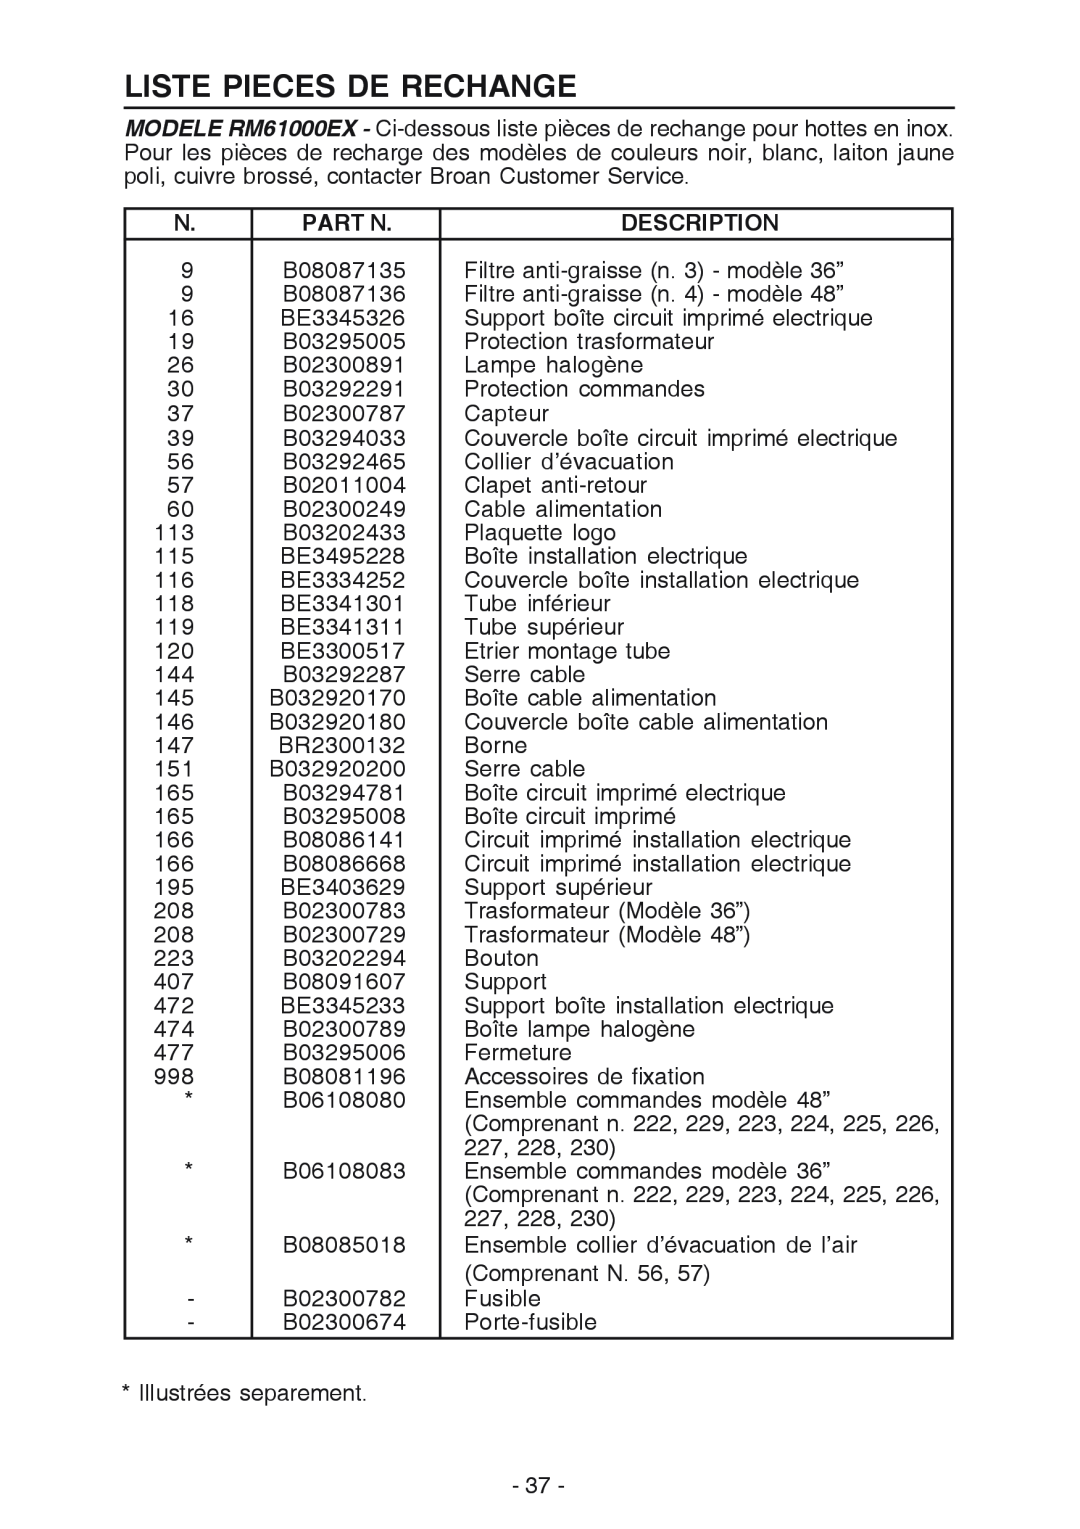 Broan 619004EX manual Liste Pieces De Rechange, Part N, Description 